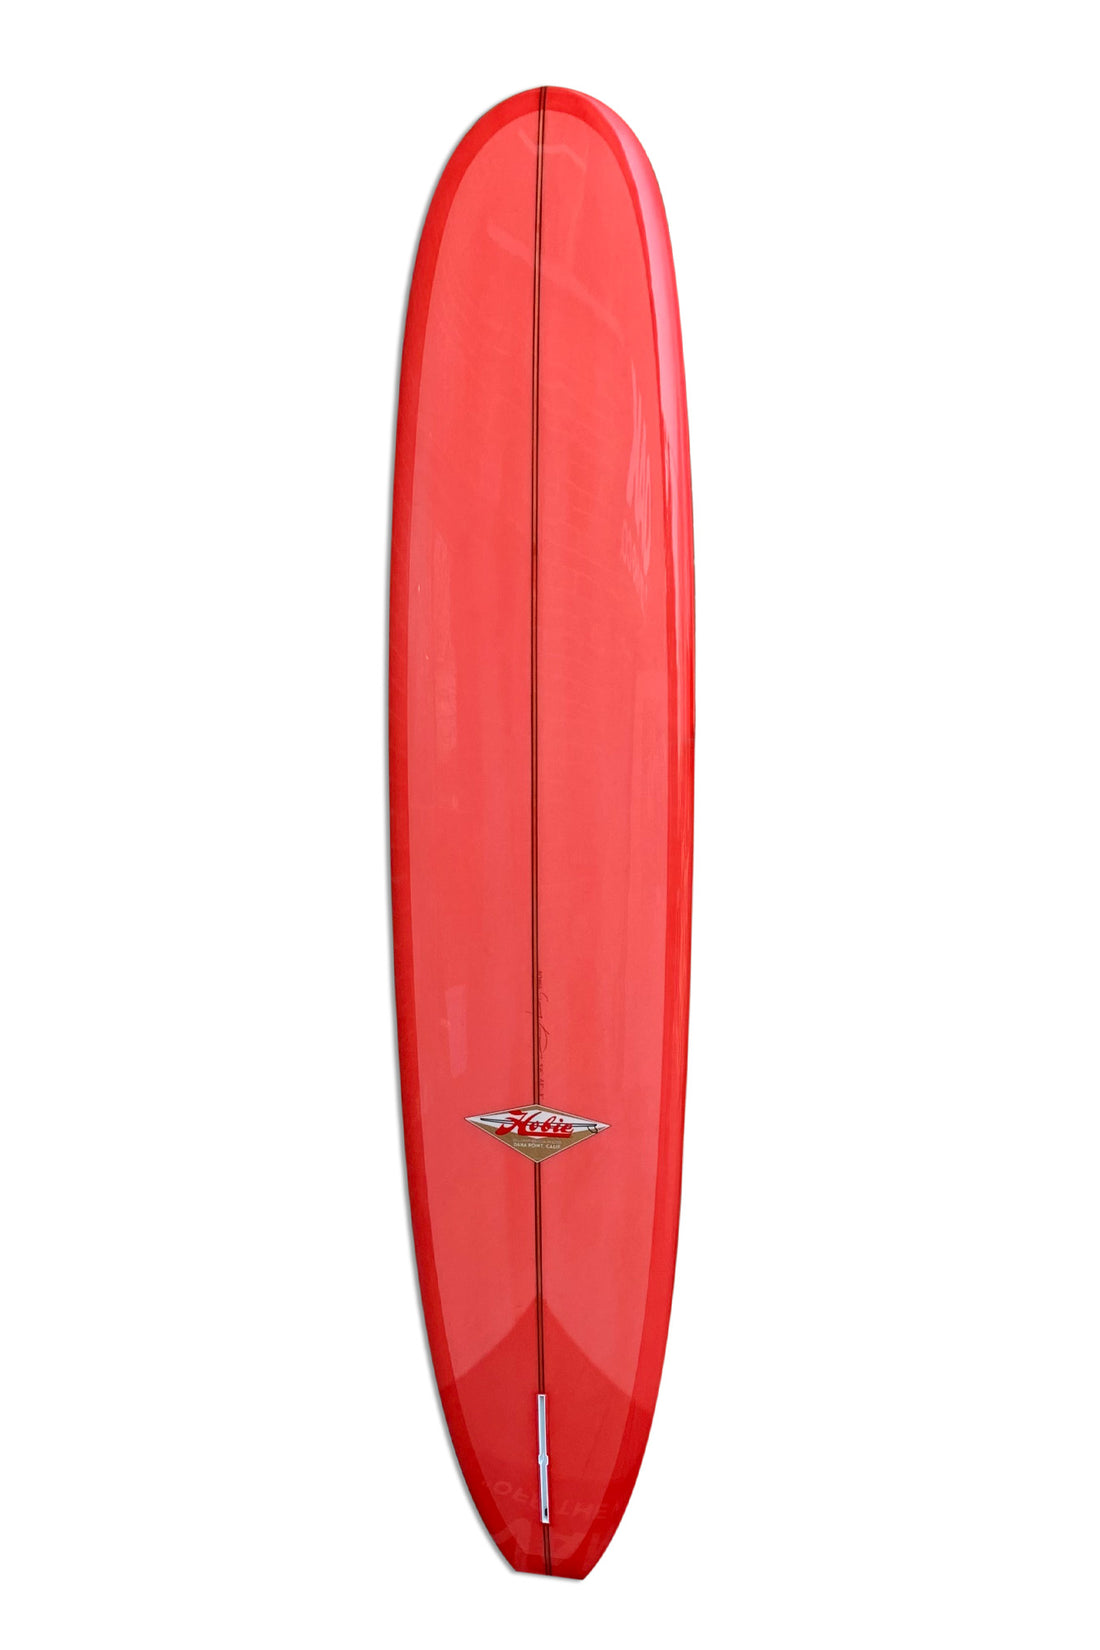 9'2 HOBIE UNCLE BUCK - PINK SURFBOARD HOBIE   